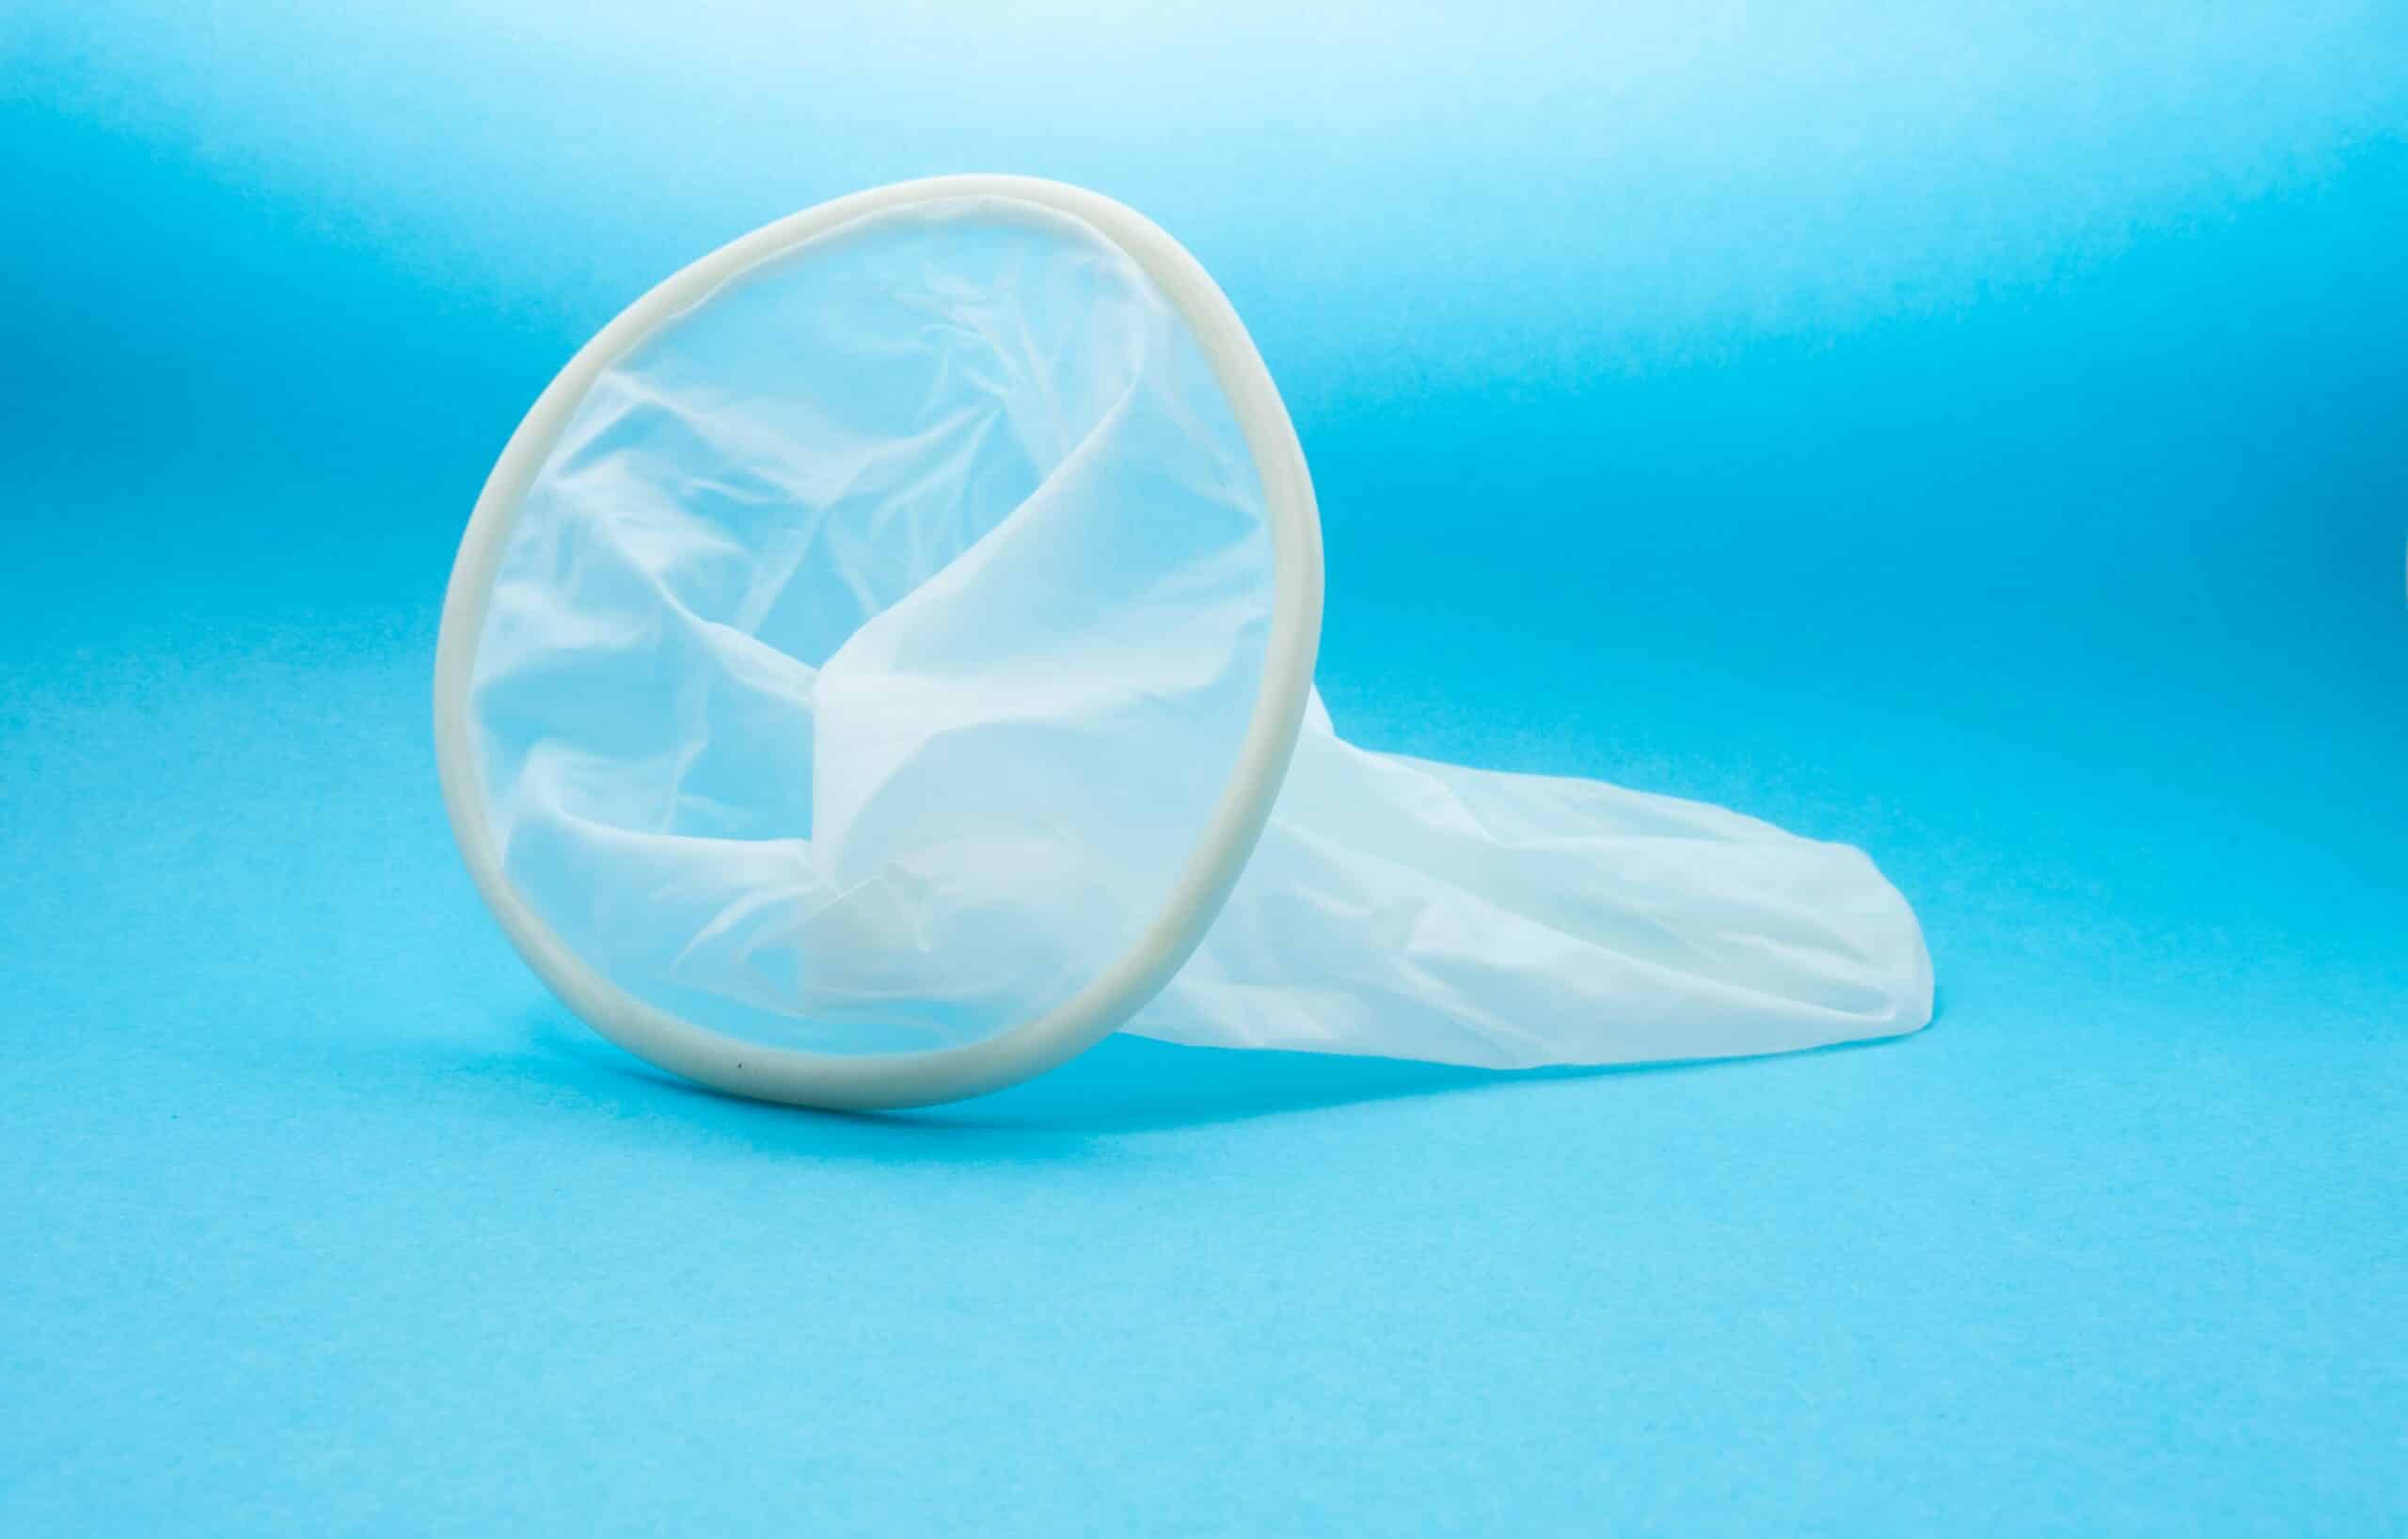 An internal condom